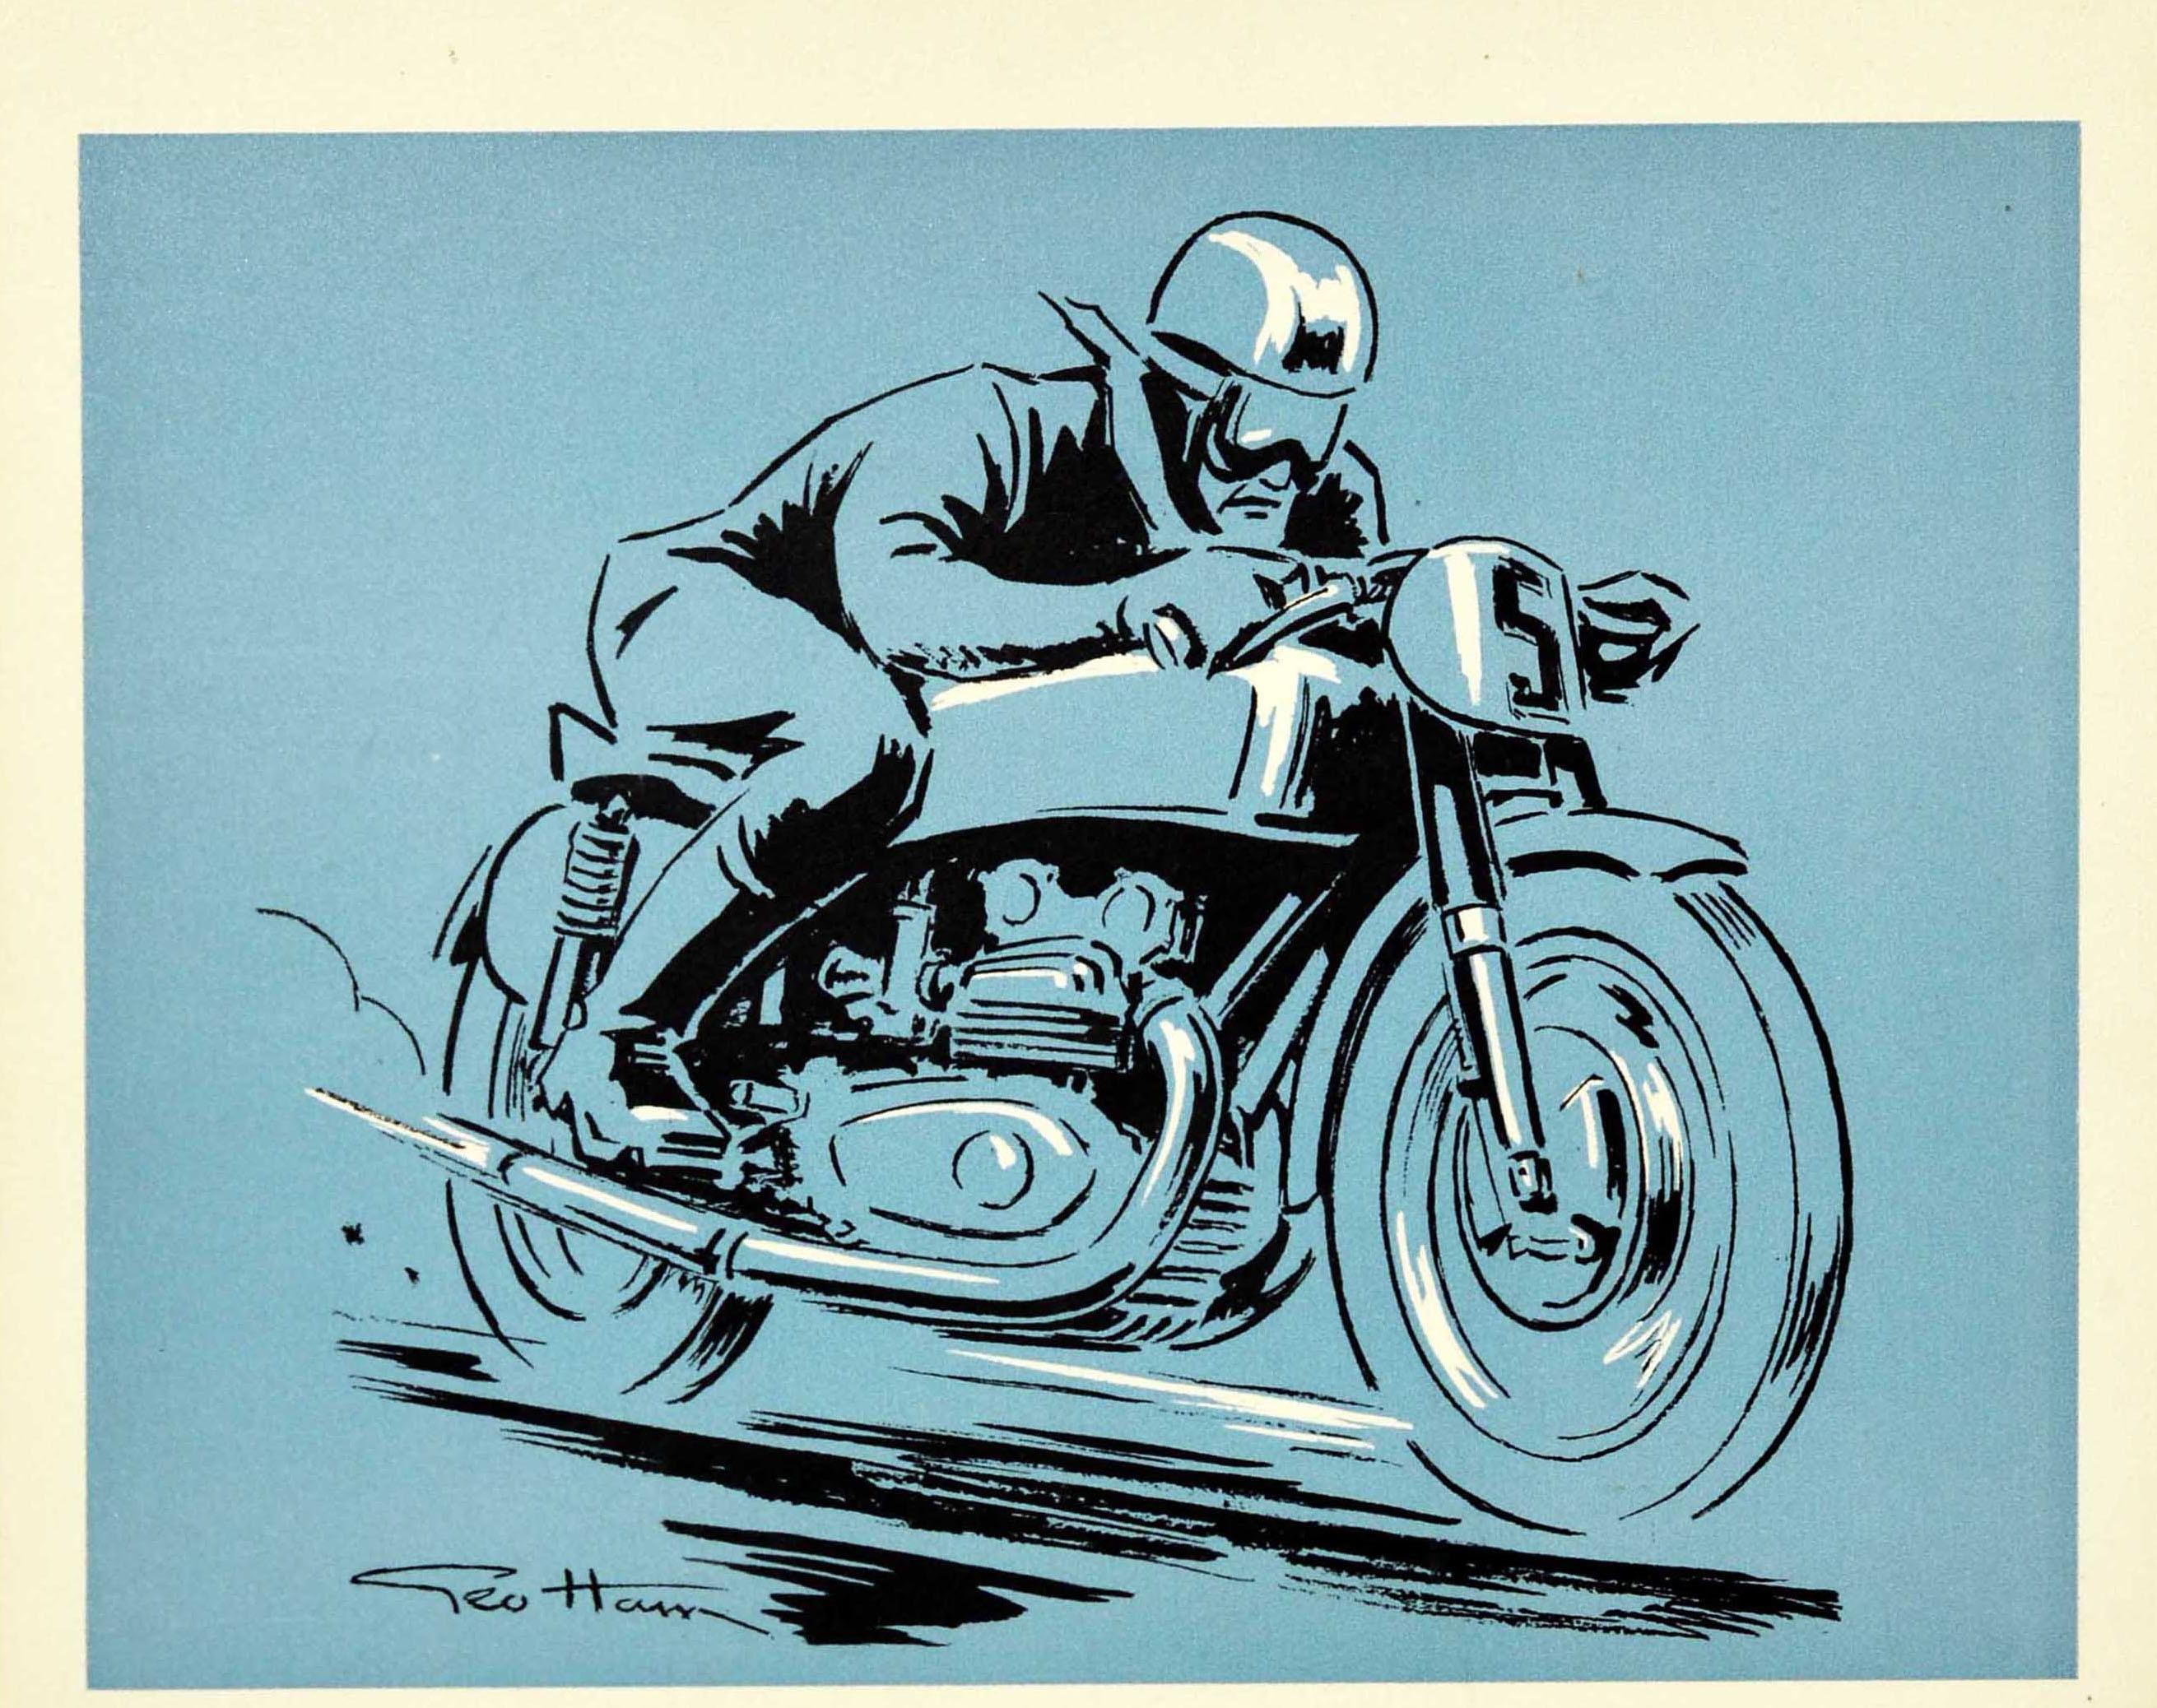 Affiche originale d'époque pour la remise d'un diplôme de sport automobile - Motocycle Club de France Diplome Decerne MCF - avec une illustration dynamique de Geo Ham (Georges Hamel ; 1900-1972) représentant un motocycliste avec un casque et des